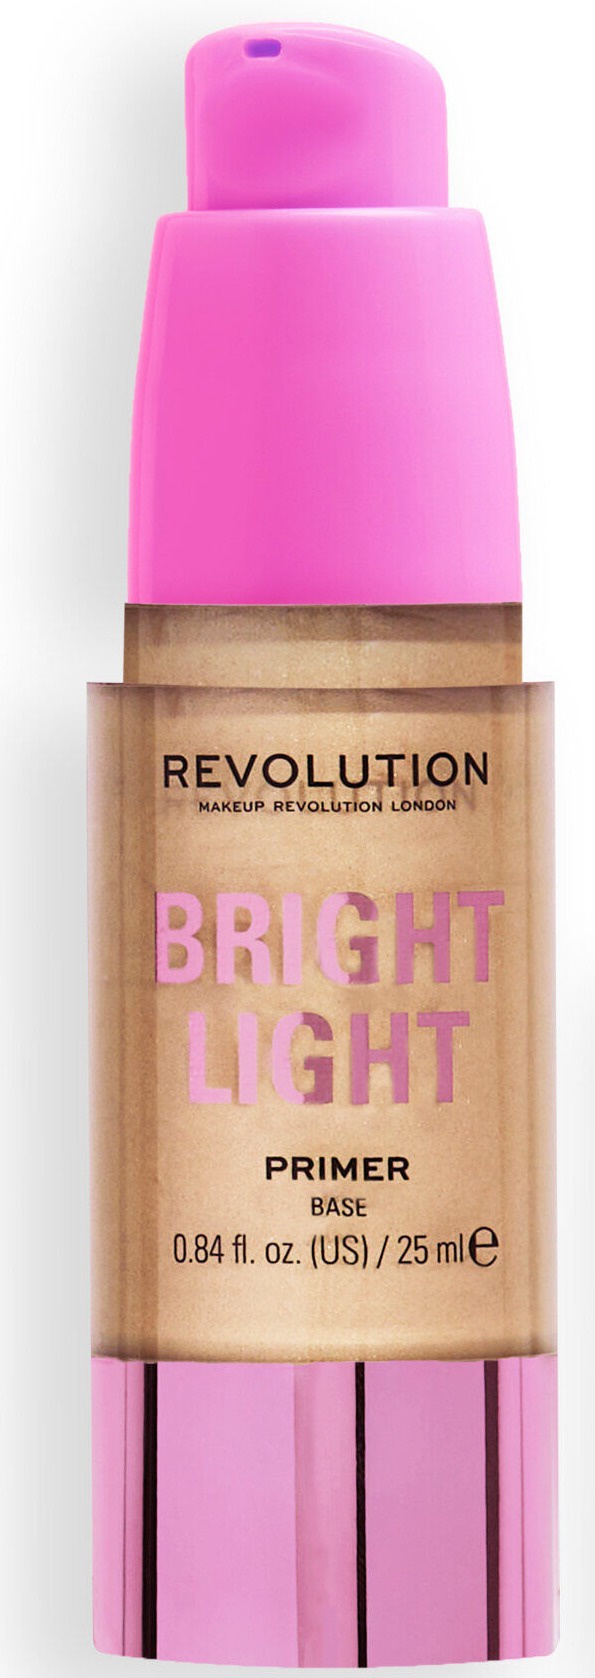 Revolution Bright Light Primer